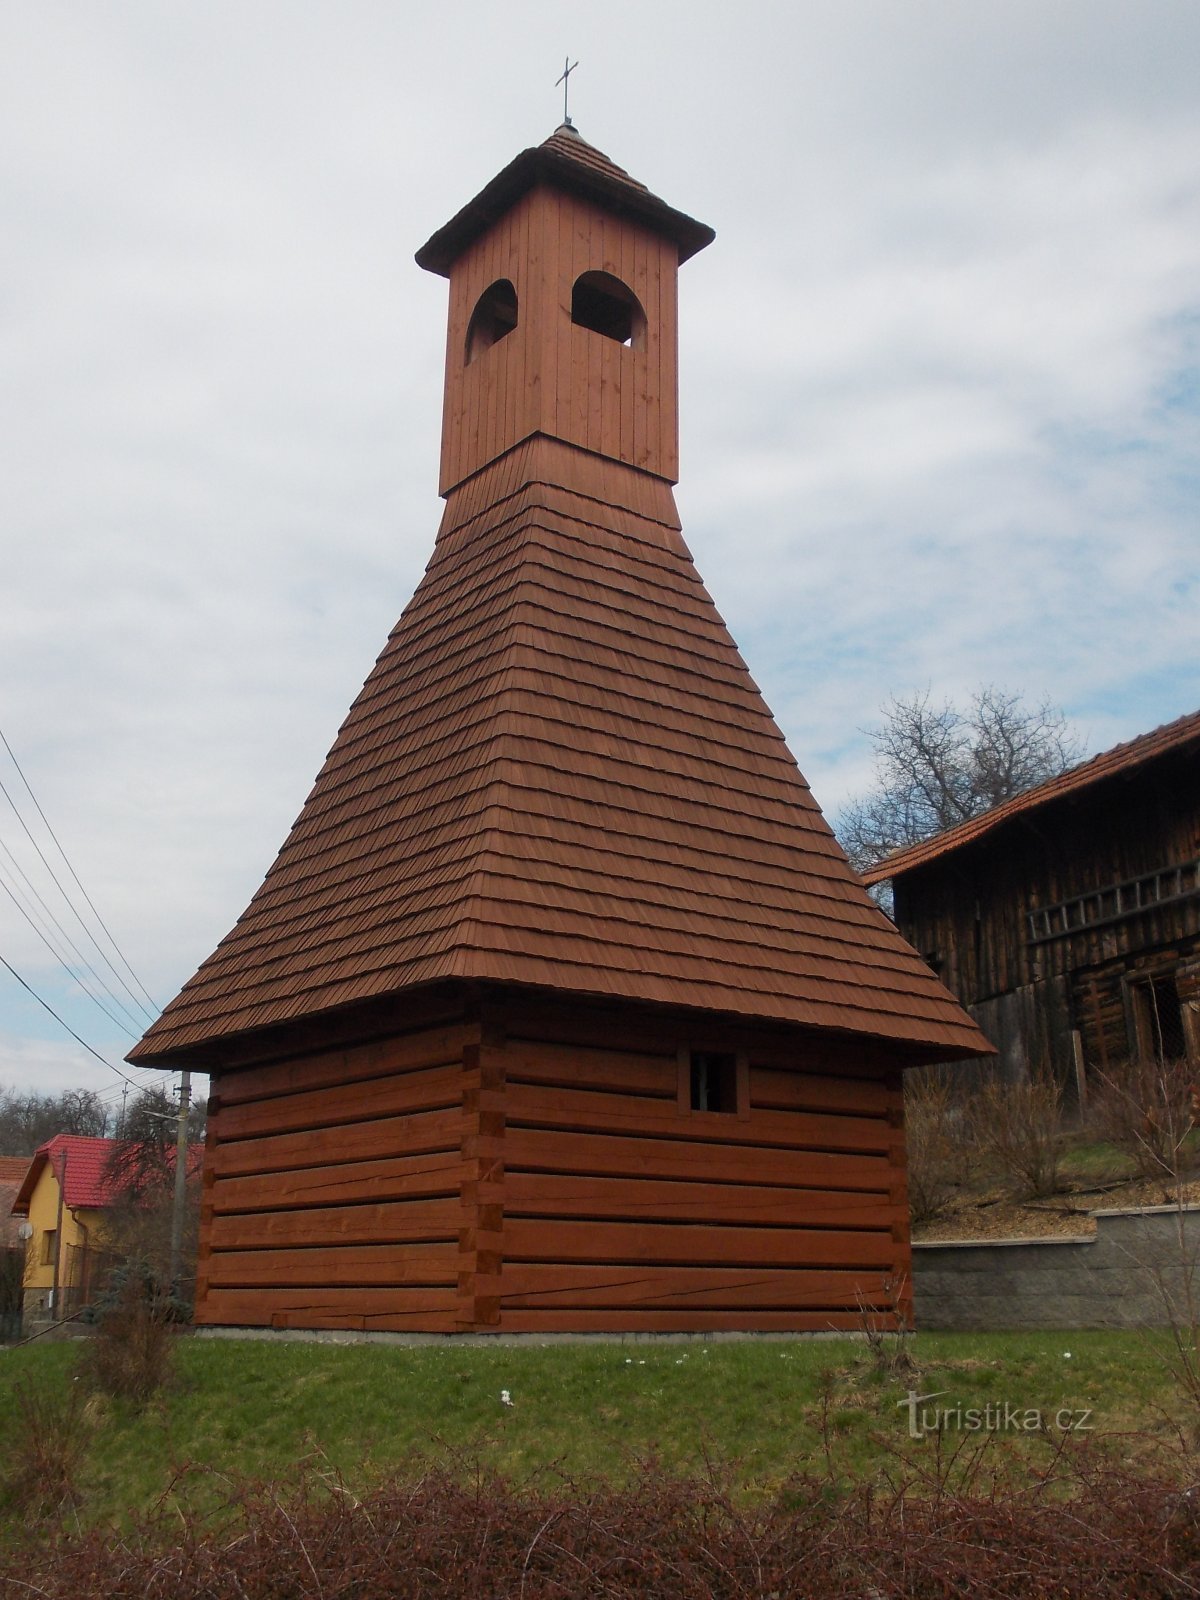 réplique du clocher en bois d'origine